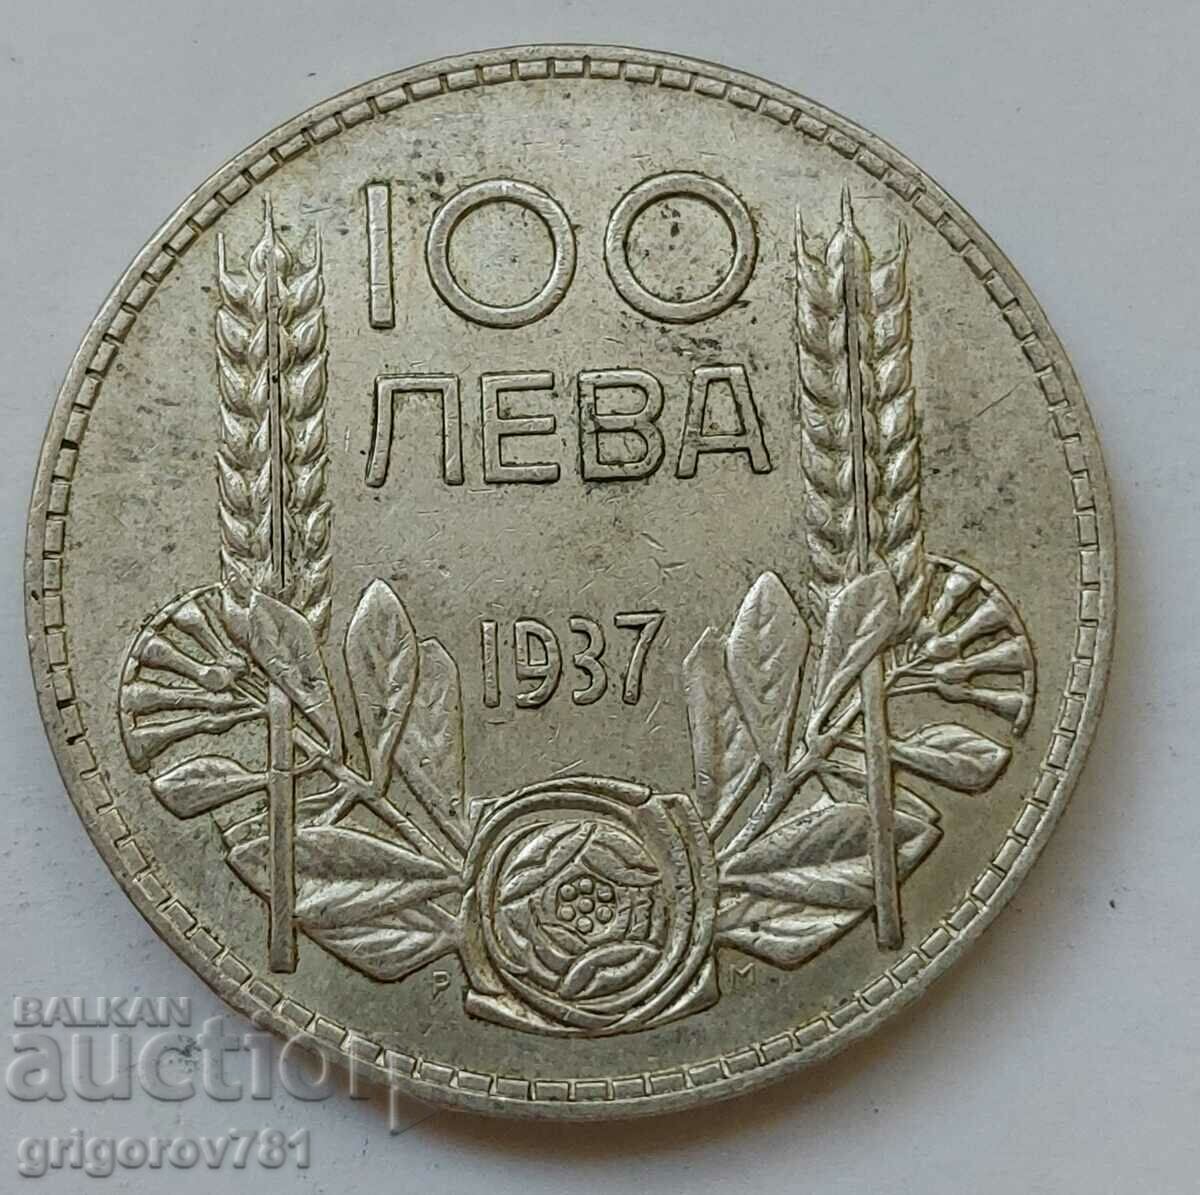 Ασήμι 100 λέβα Βουλγαρία 1937 - ασημένιο νόμισμα #109